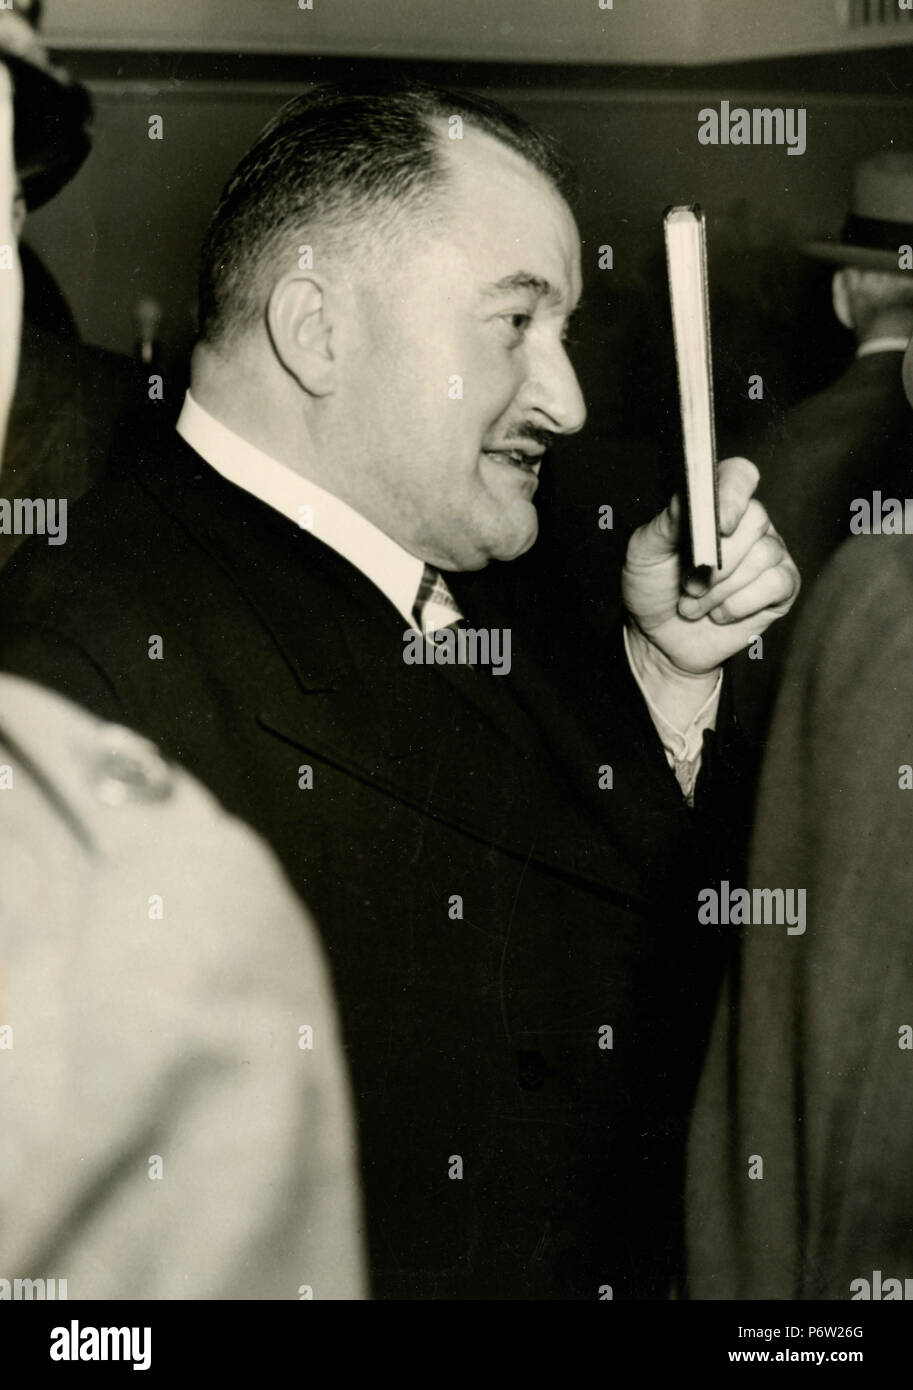 Grover Cleveland Bergdoll, Guerre Mondiale Projet de déserteur, NY, USA, 1939 Banque D'Images